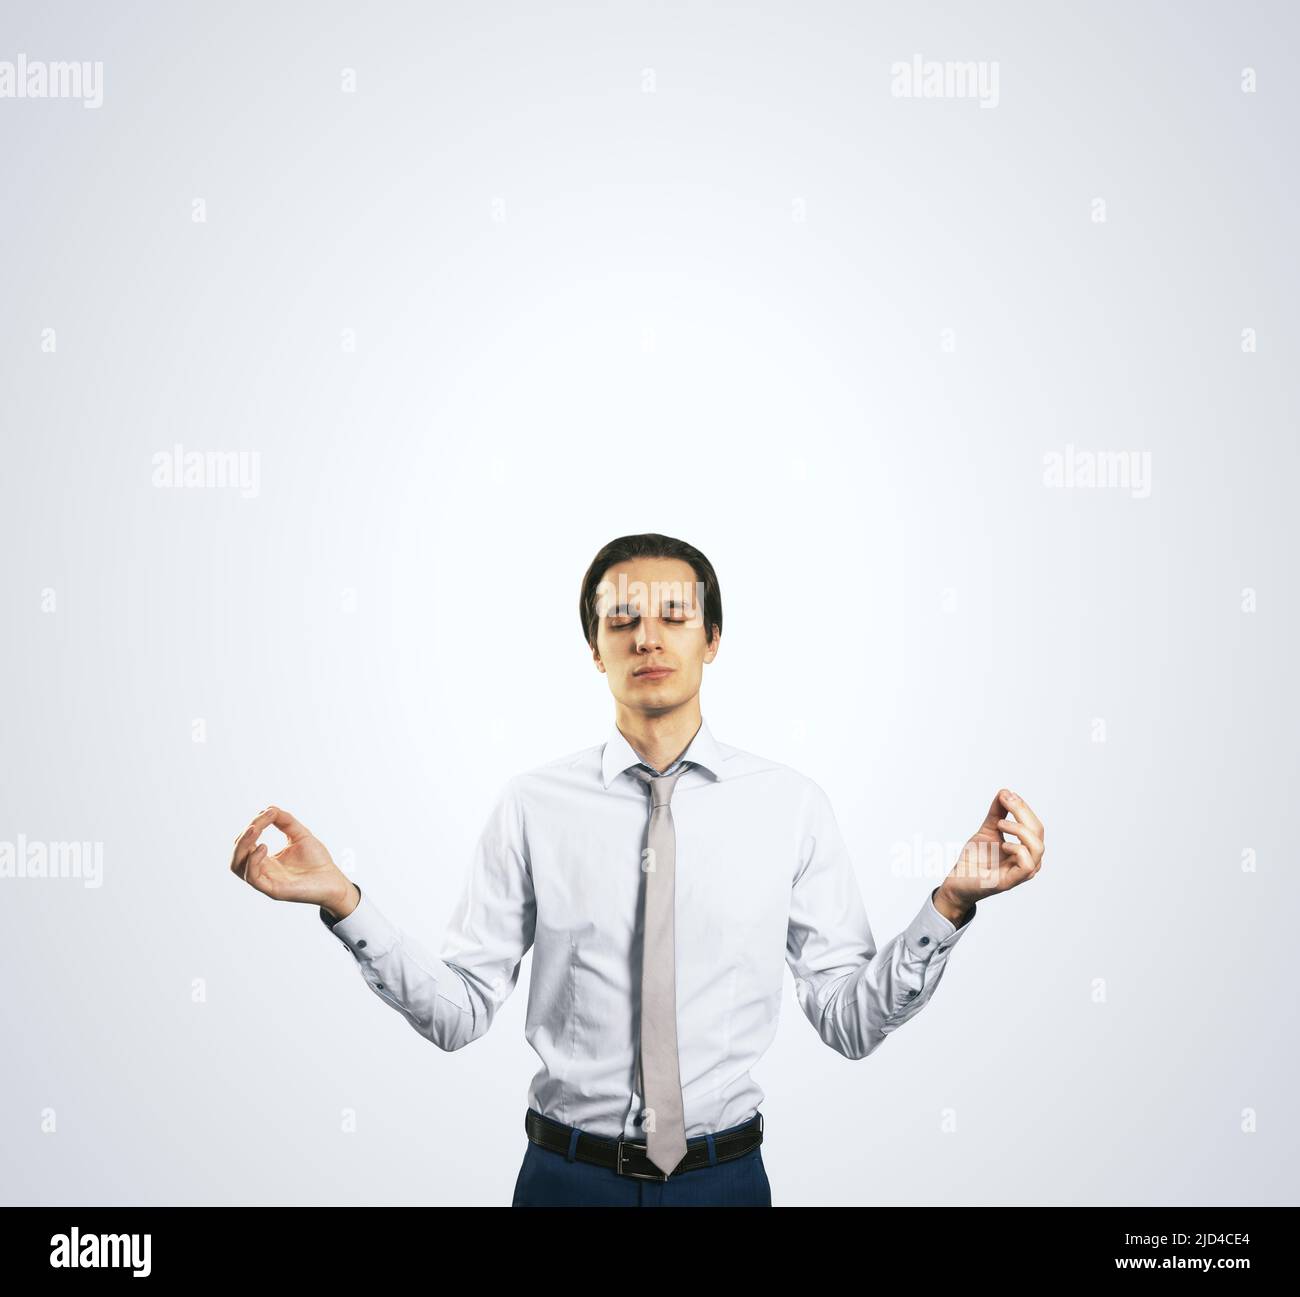 Concept de calme avec homme en chemise blanche dans une posture zen isolée  sur fond gris clair de mur avec un emplacement vide pour votre texte ou  logo, maquette Photo Stock -